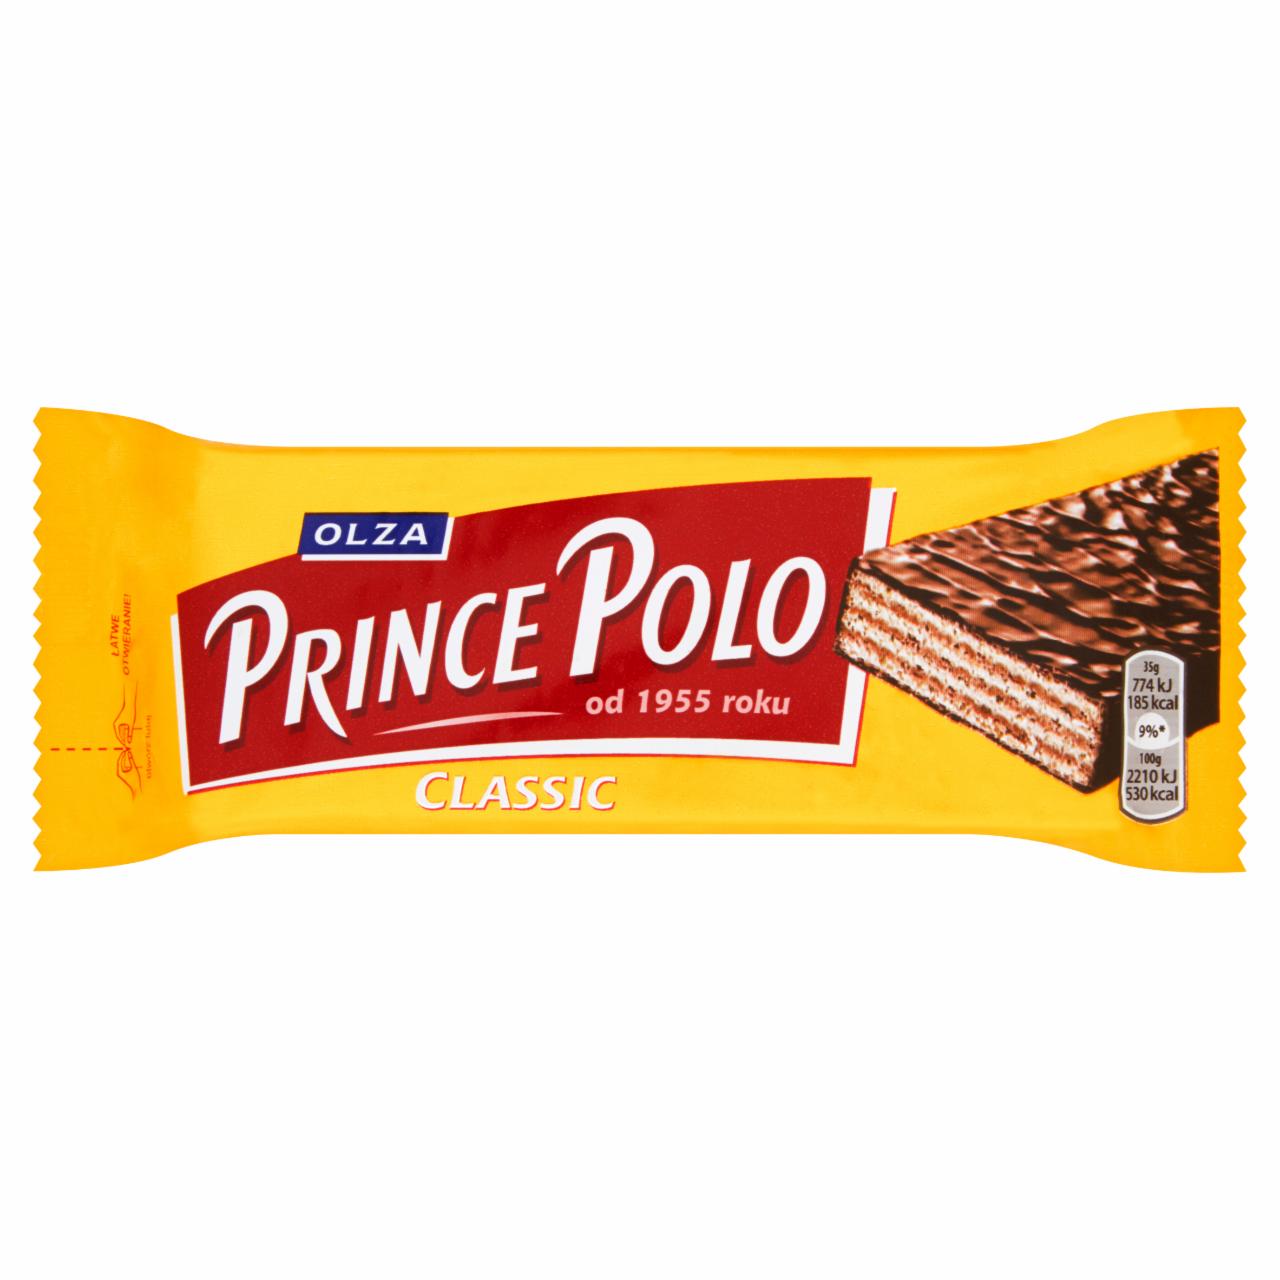 Zdjęcia - Prince Polo Classic Kruchy wafelek z kremem kakaowym oblany czekoladą 35 g